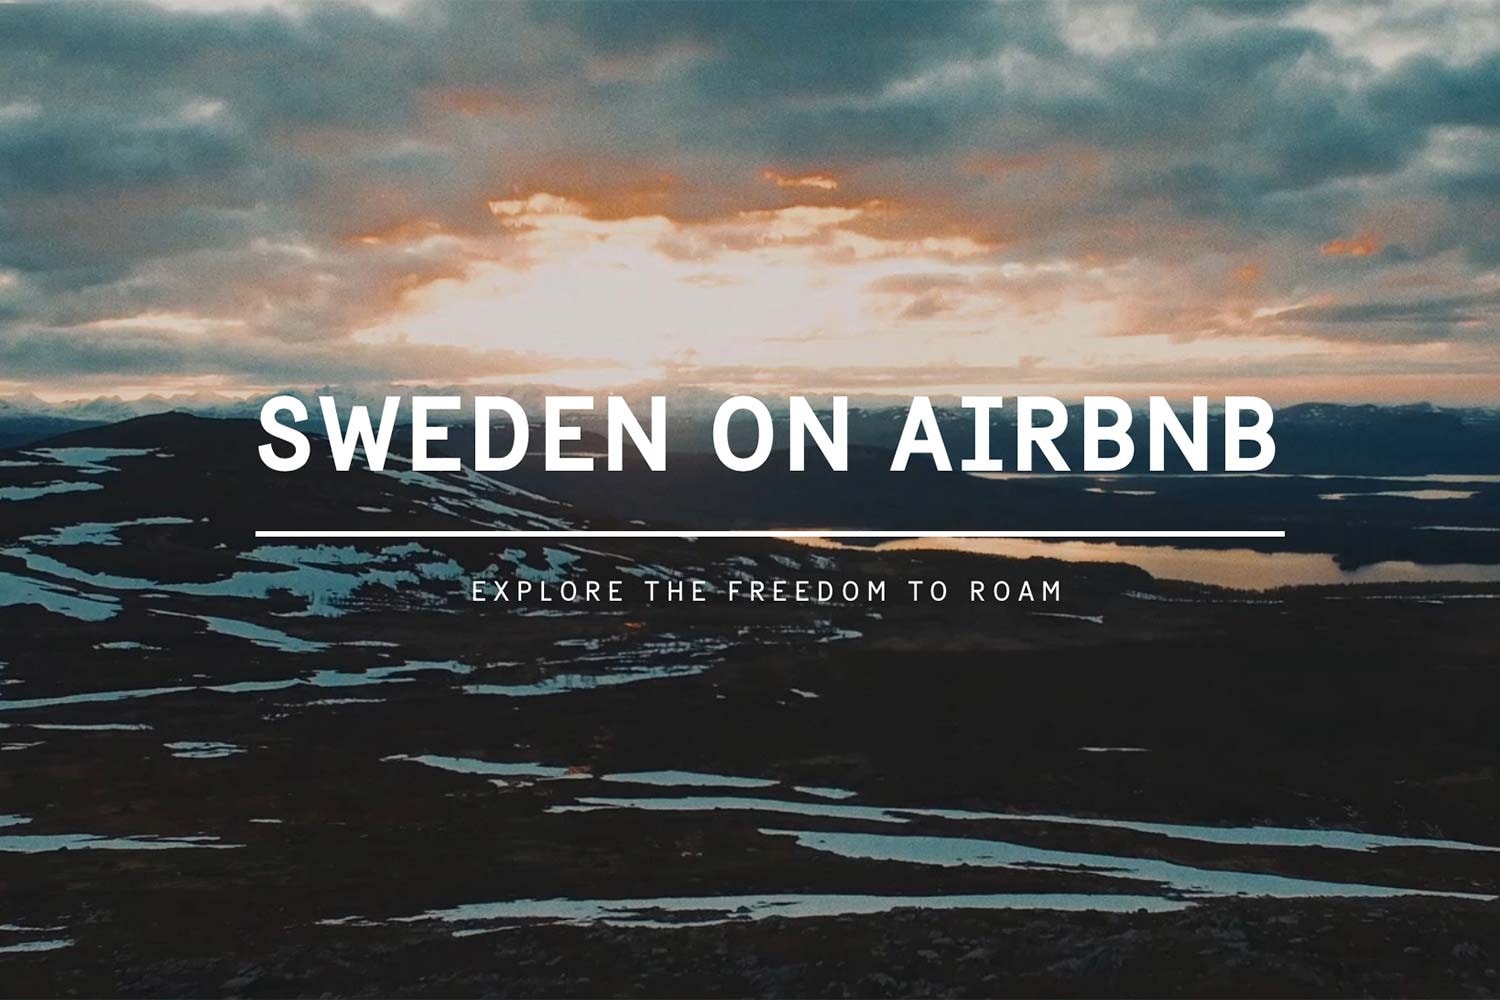 スウェーデンが国全体を Airbnb に掲載